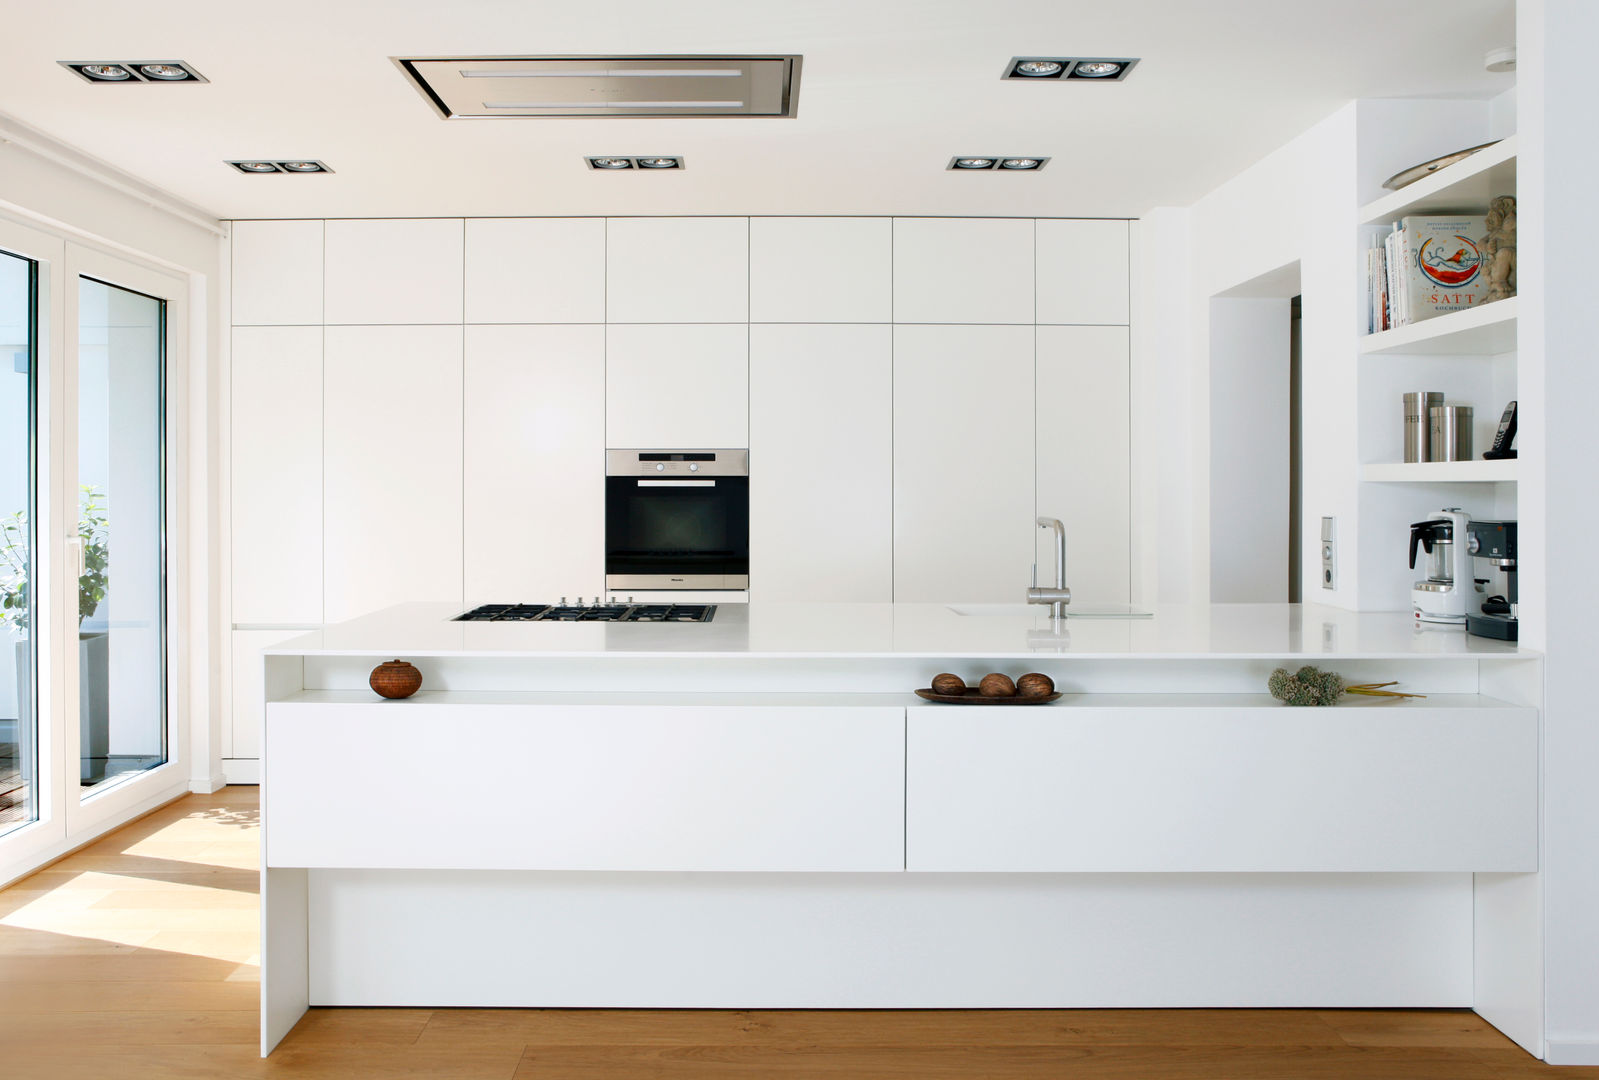 Küche R., rother küchenkonzepte + möbeldesign Gmbh rother küchenkonzepte + möbeldesign Gmbh Modern kitchen